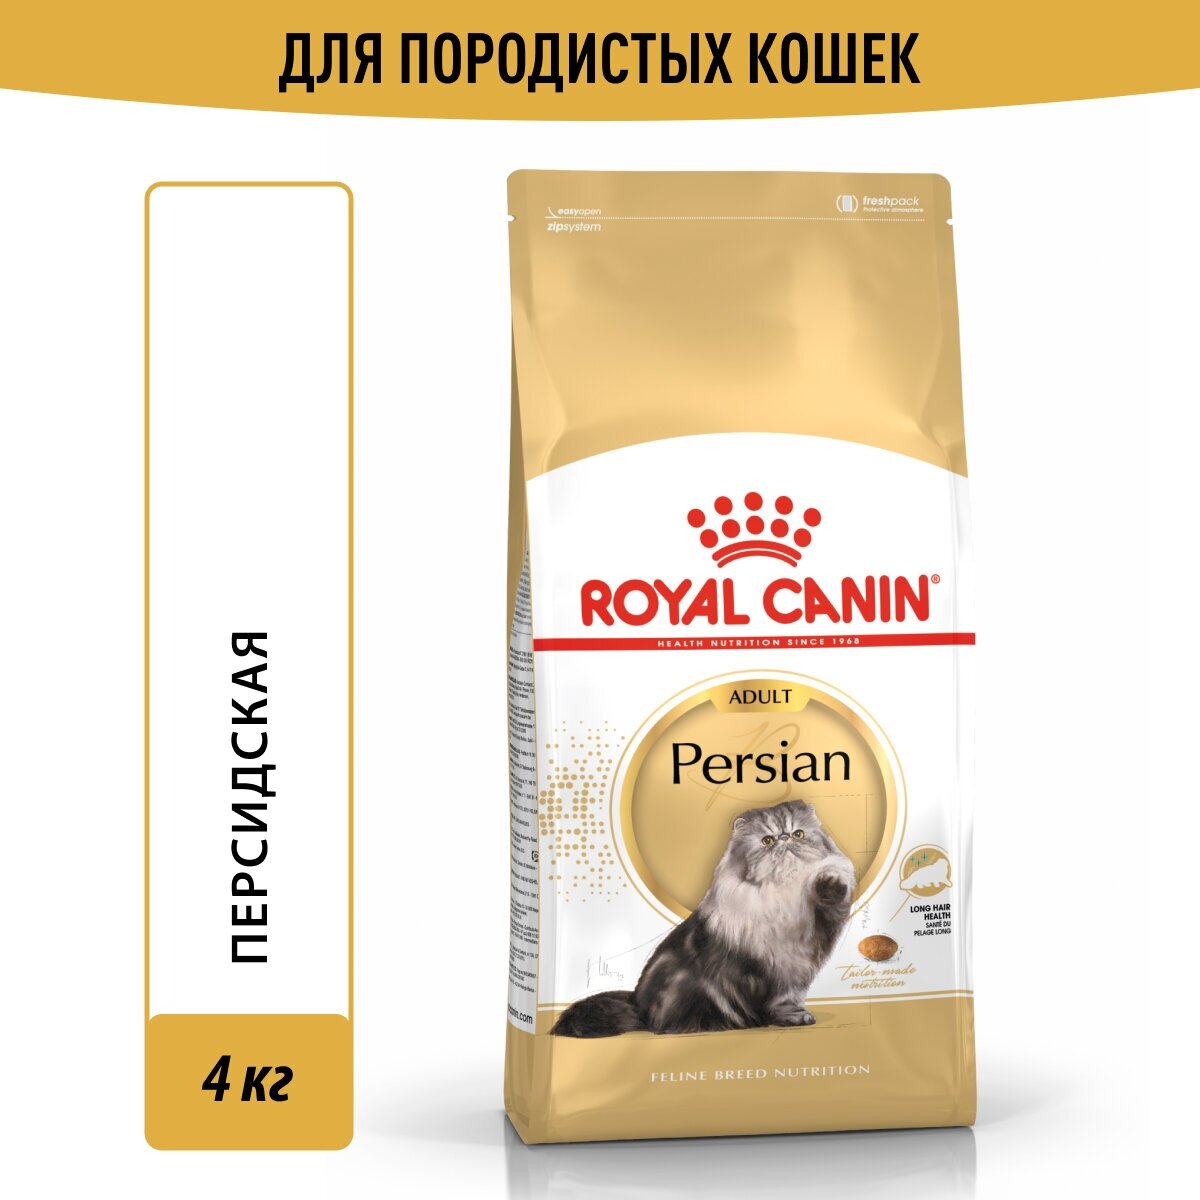 Корм для кошек Royal Canin Persian Adult (Персиан Эдалт) Корм сухой сбалансированный для взрослых персидских кошек, 4кг